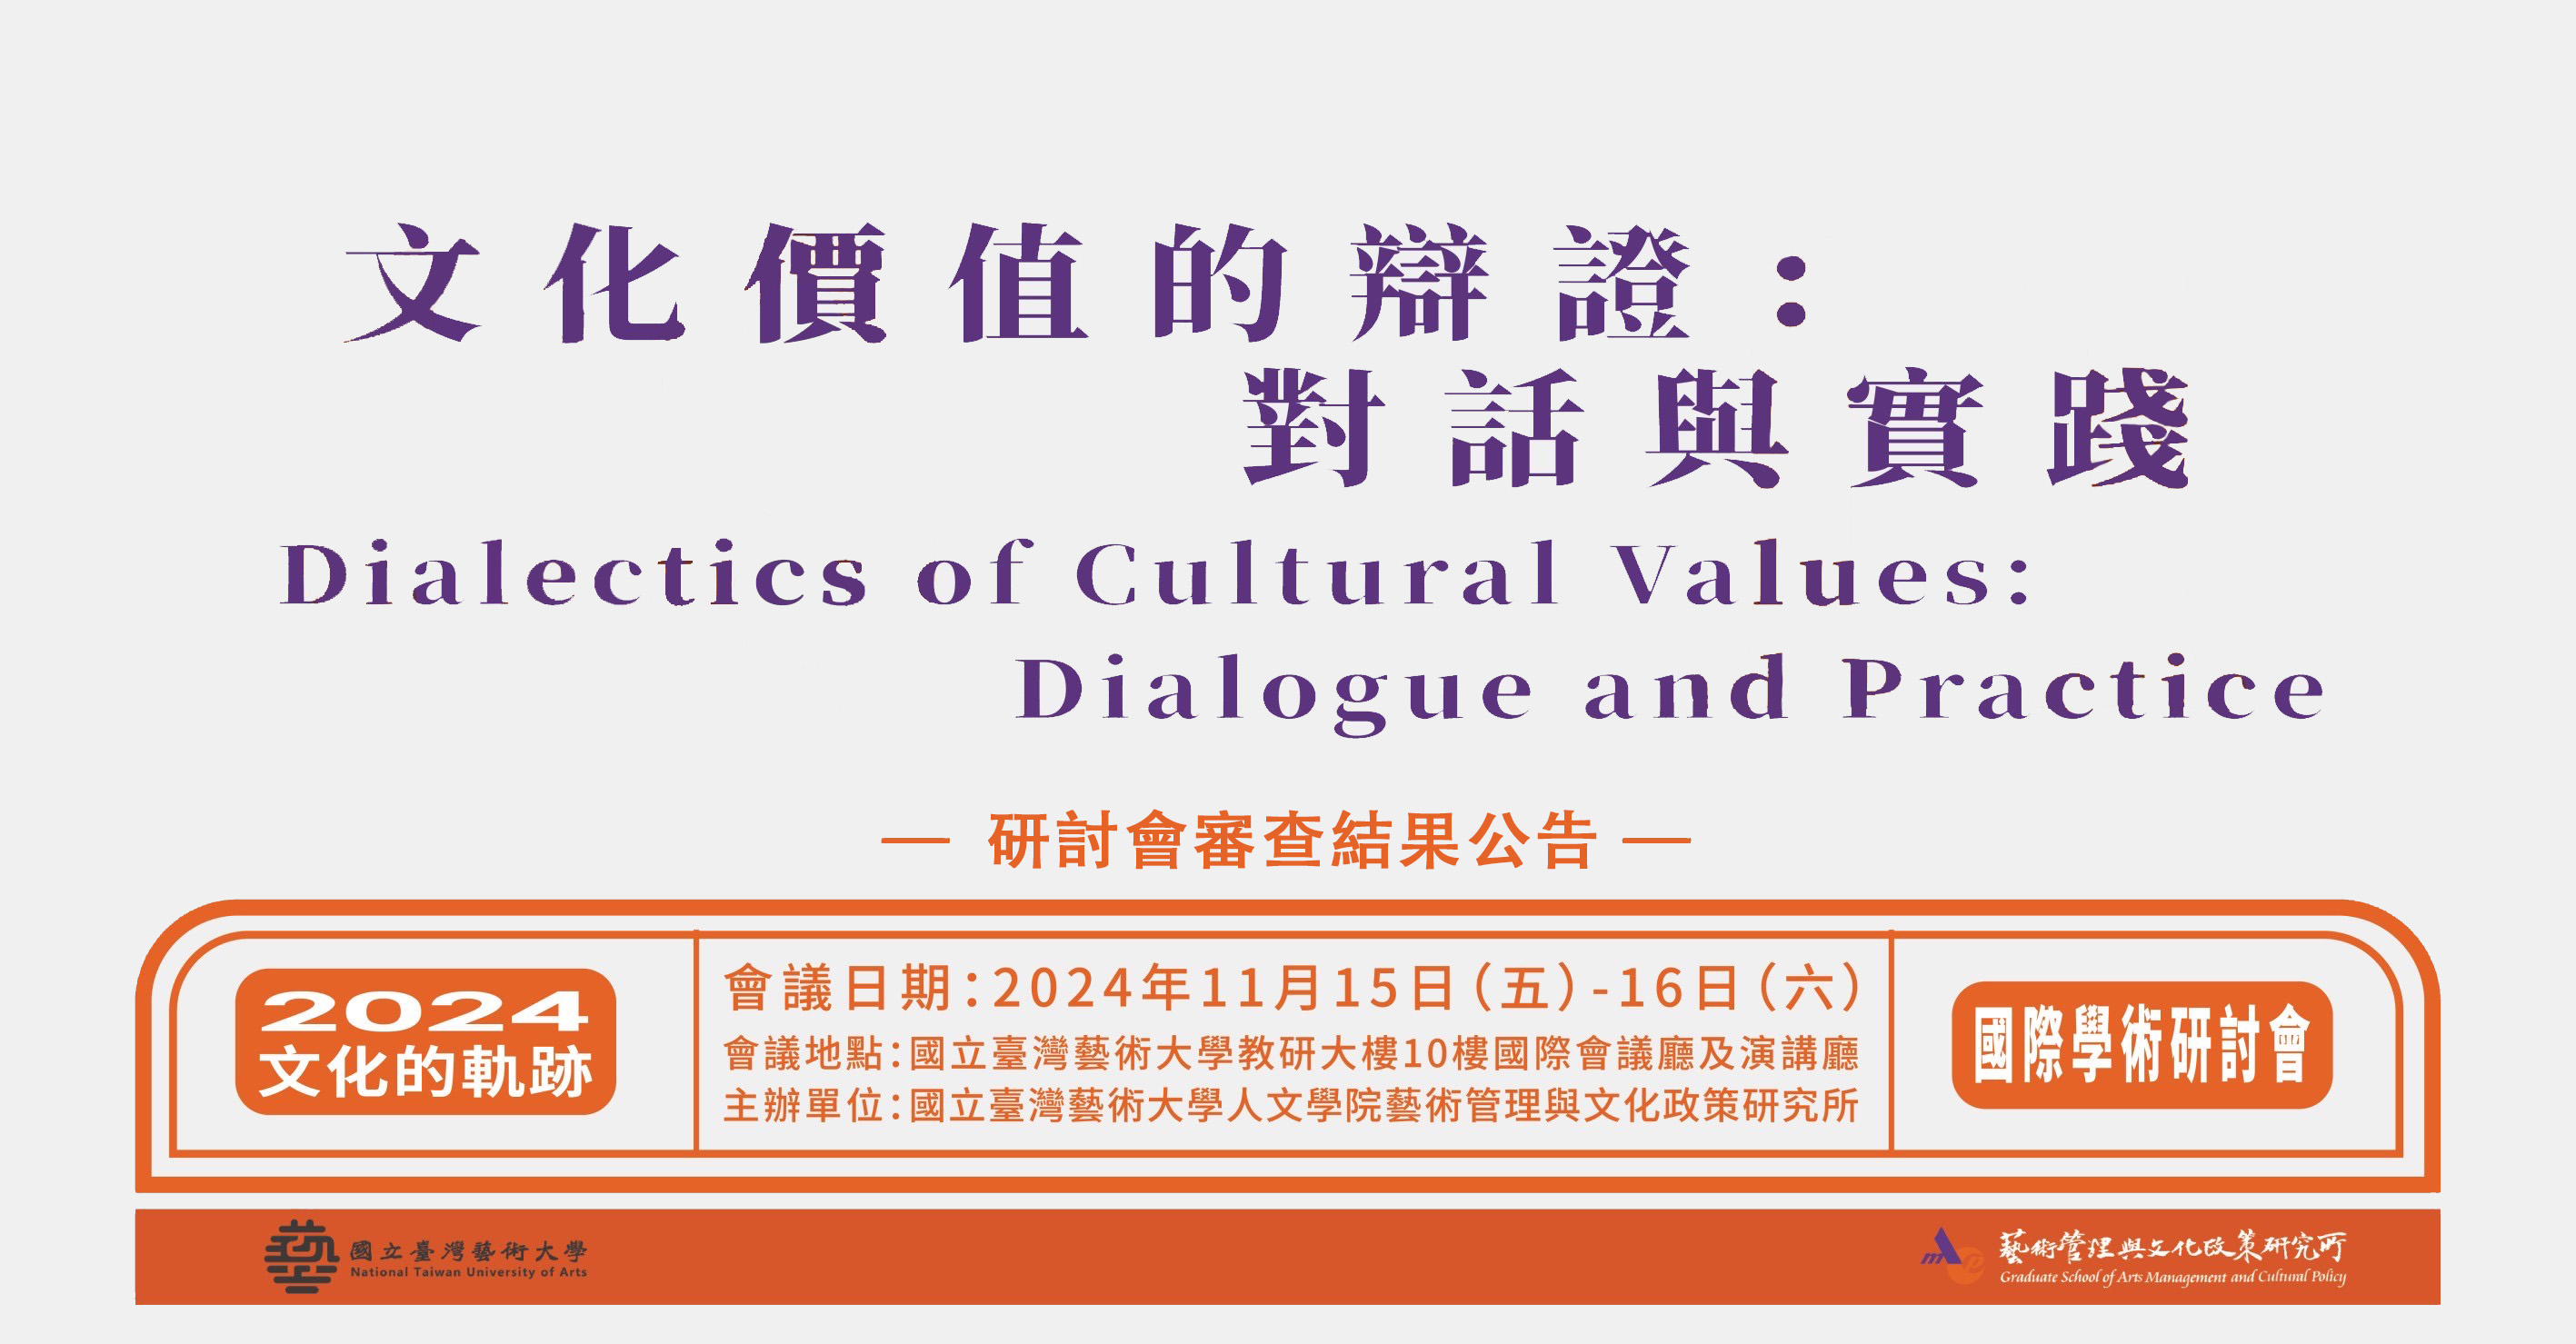 【2024研討會審查結果公告】2024年文化的軌跡：文化價值的辯證：對話與實踐 - Dialectics of Cultural Values: Dialogue and Practice 國際學術研討會